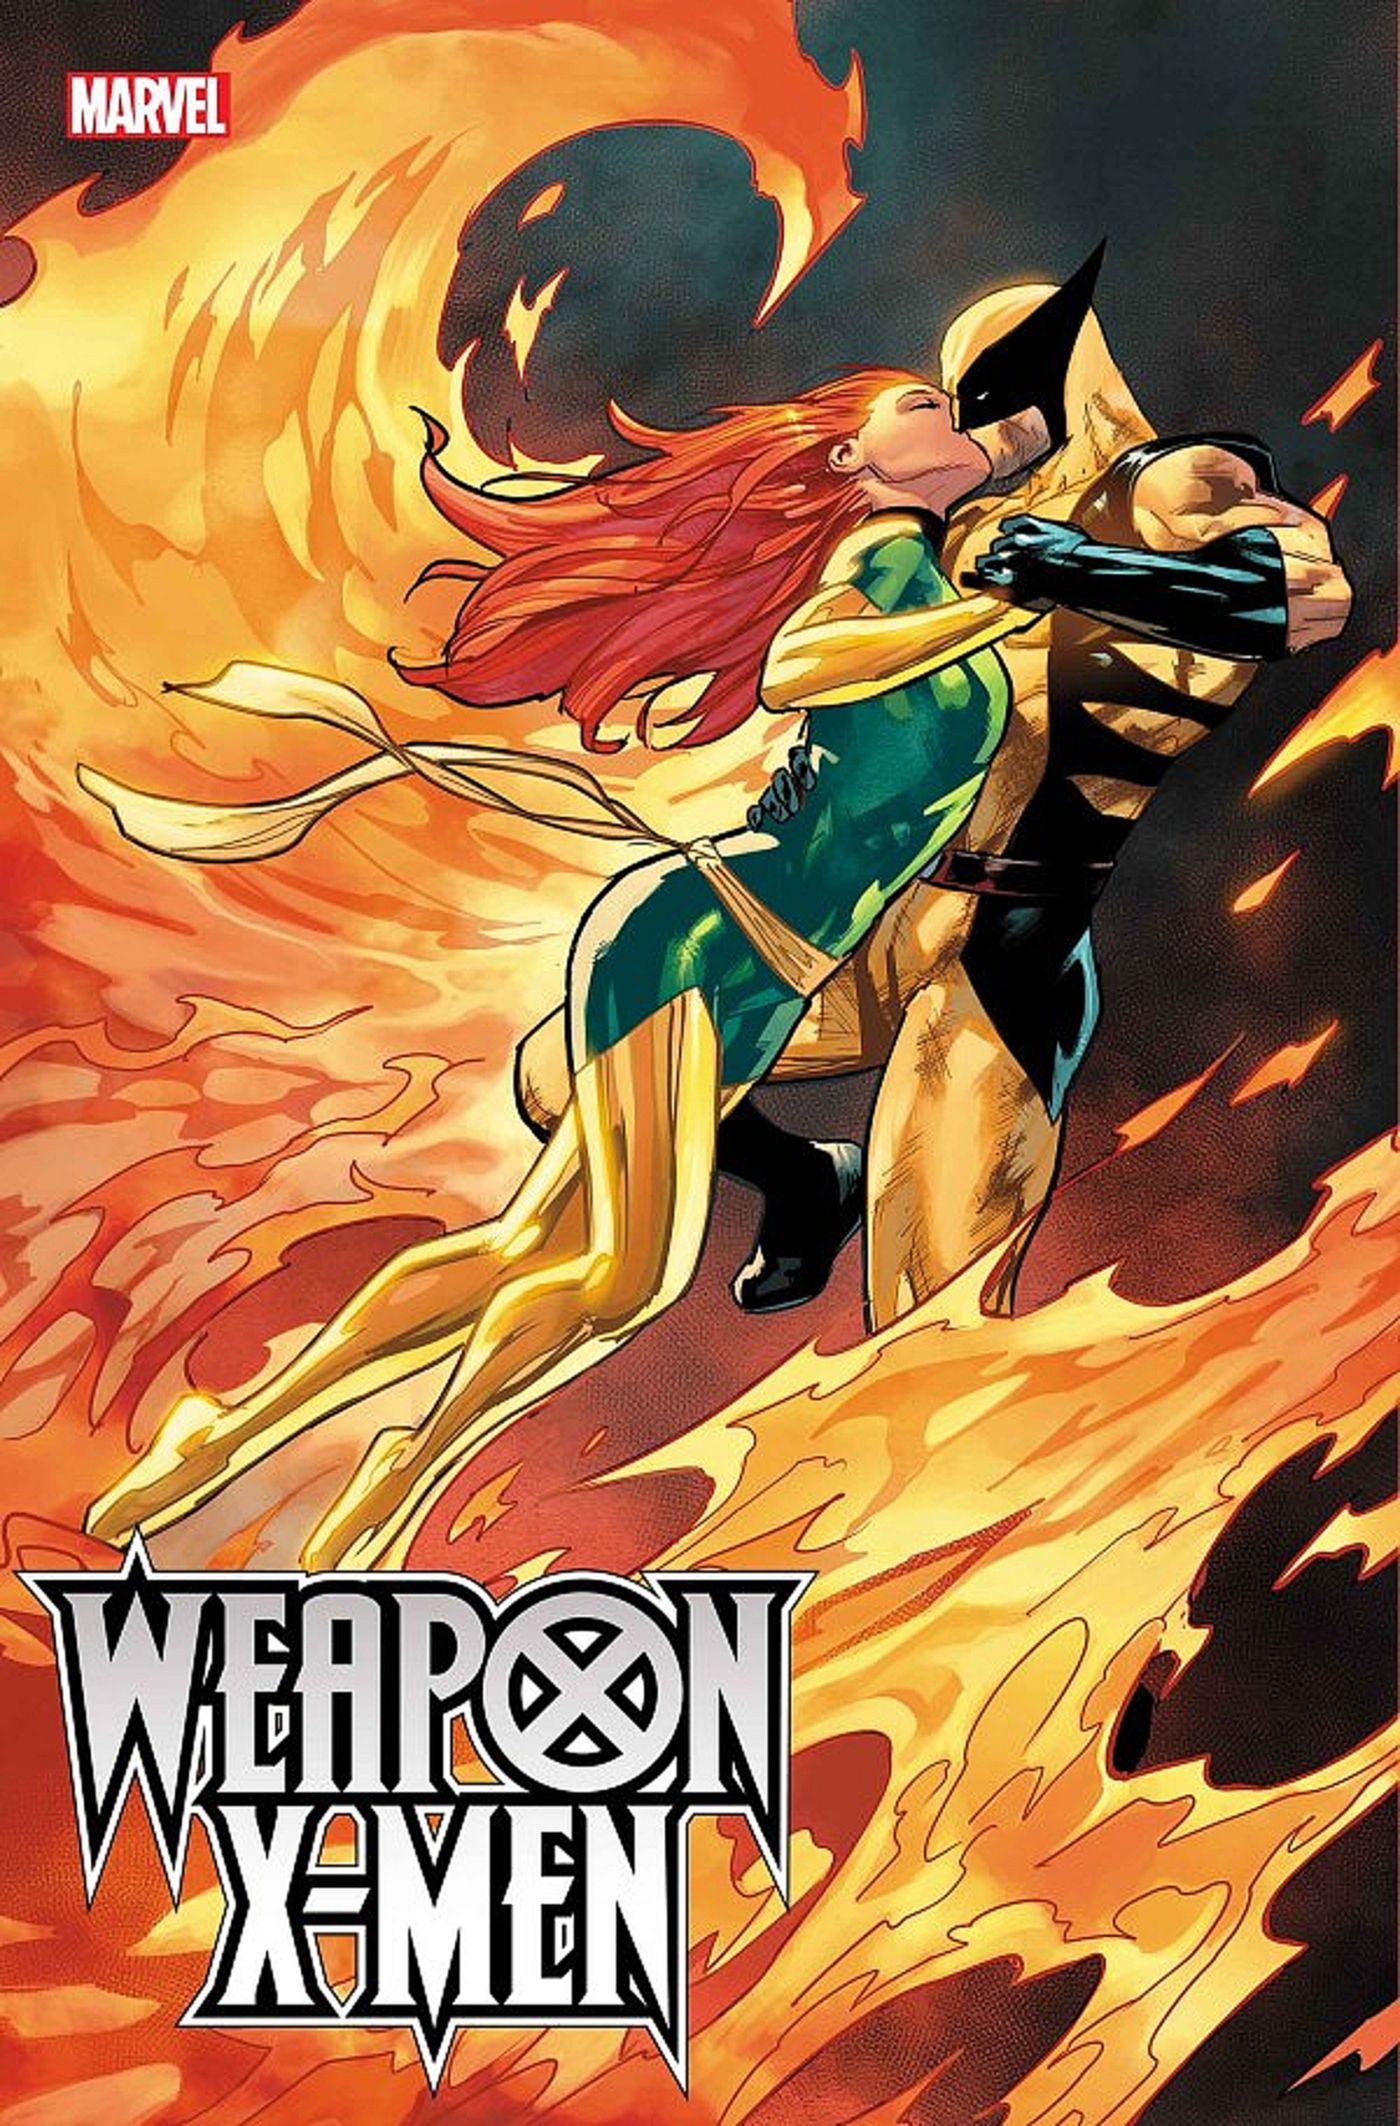 Wolverine #42, Jan Bazaldua cover, Wolverine & Jean Grey in a fiery embrace